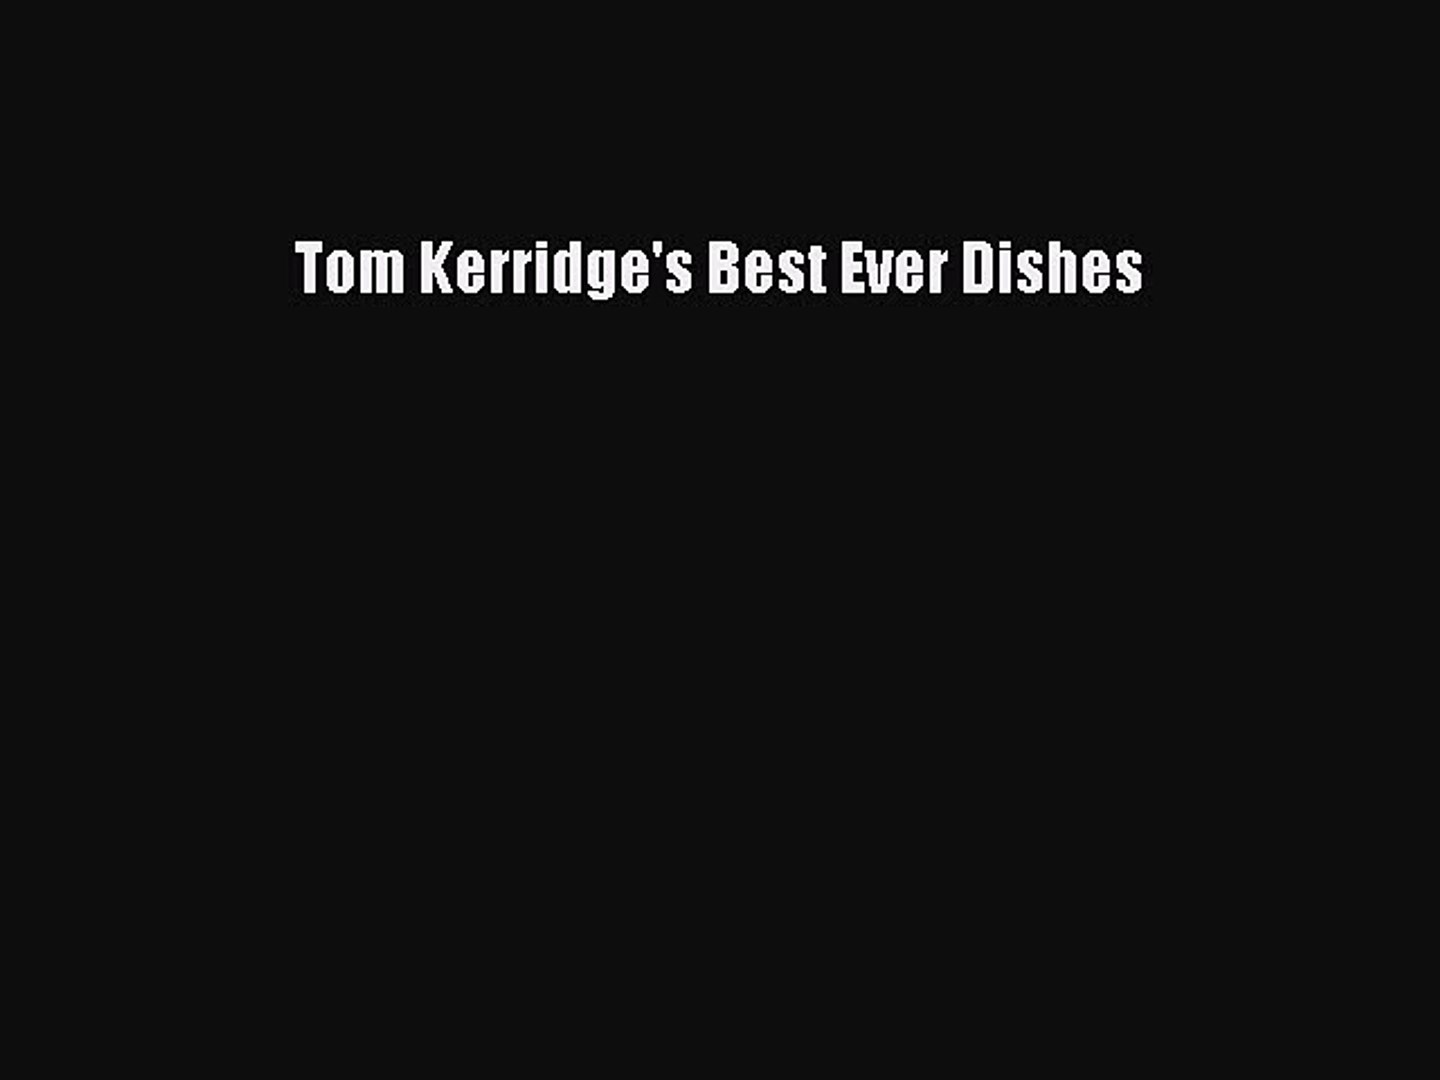 Download Tom Kerridge's Best Ever Dishes Ebook Online - video ...